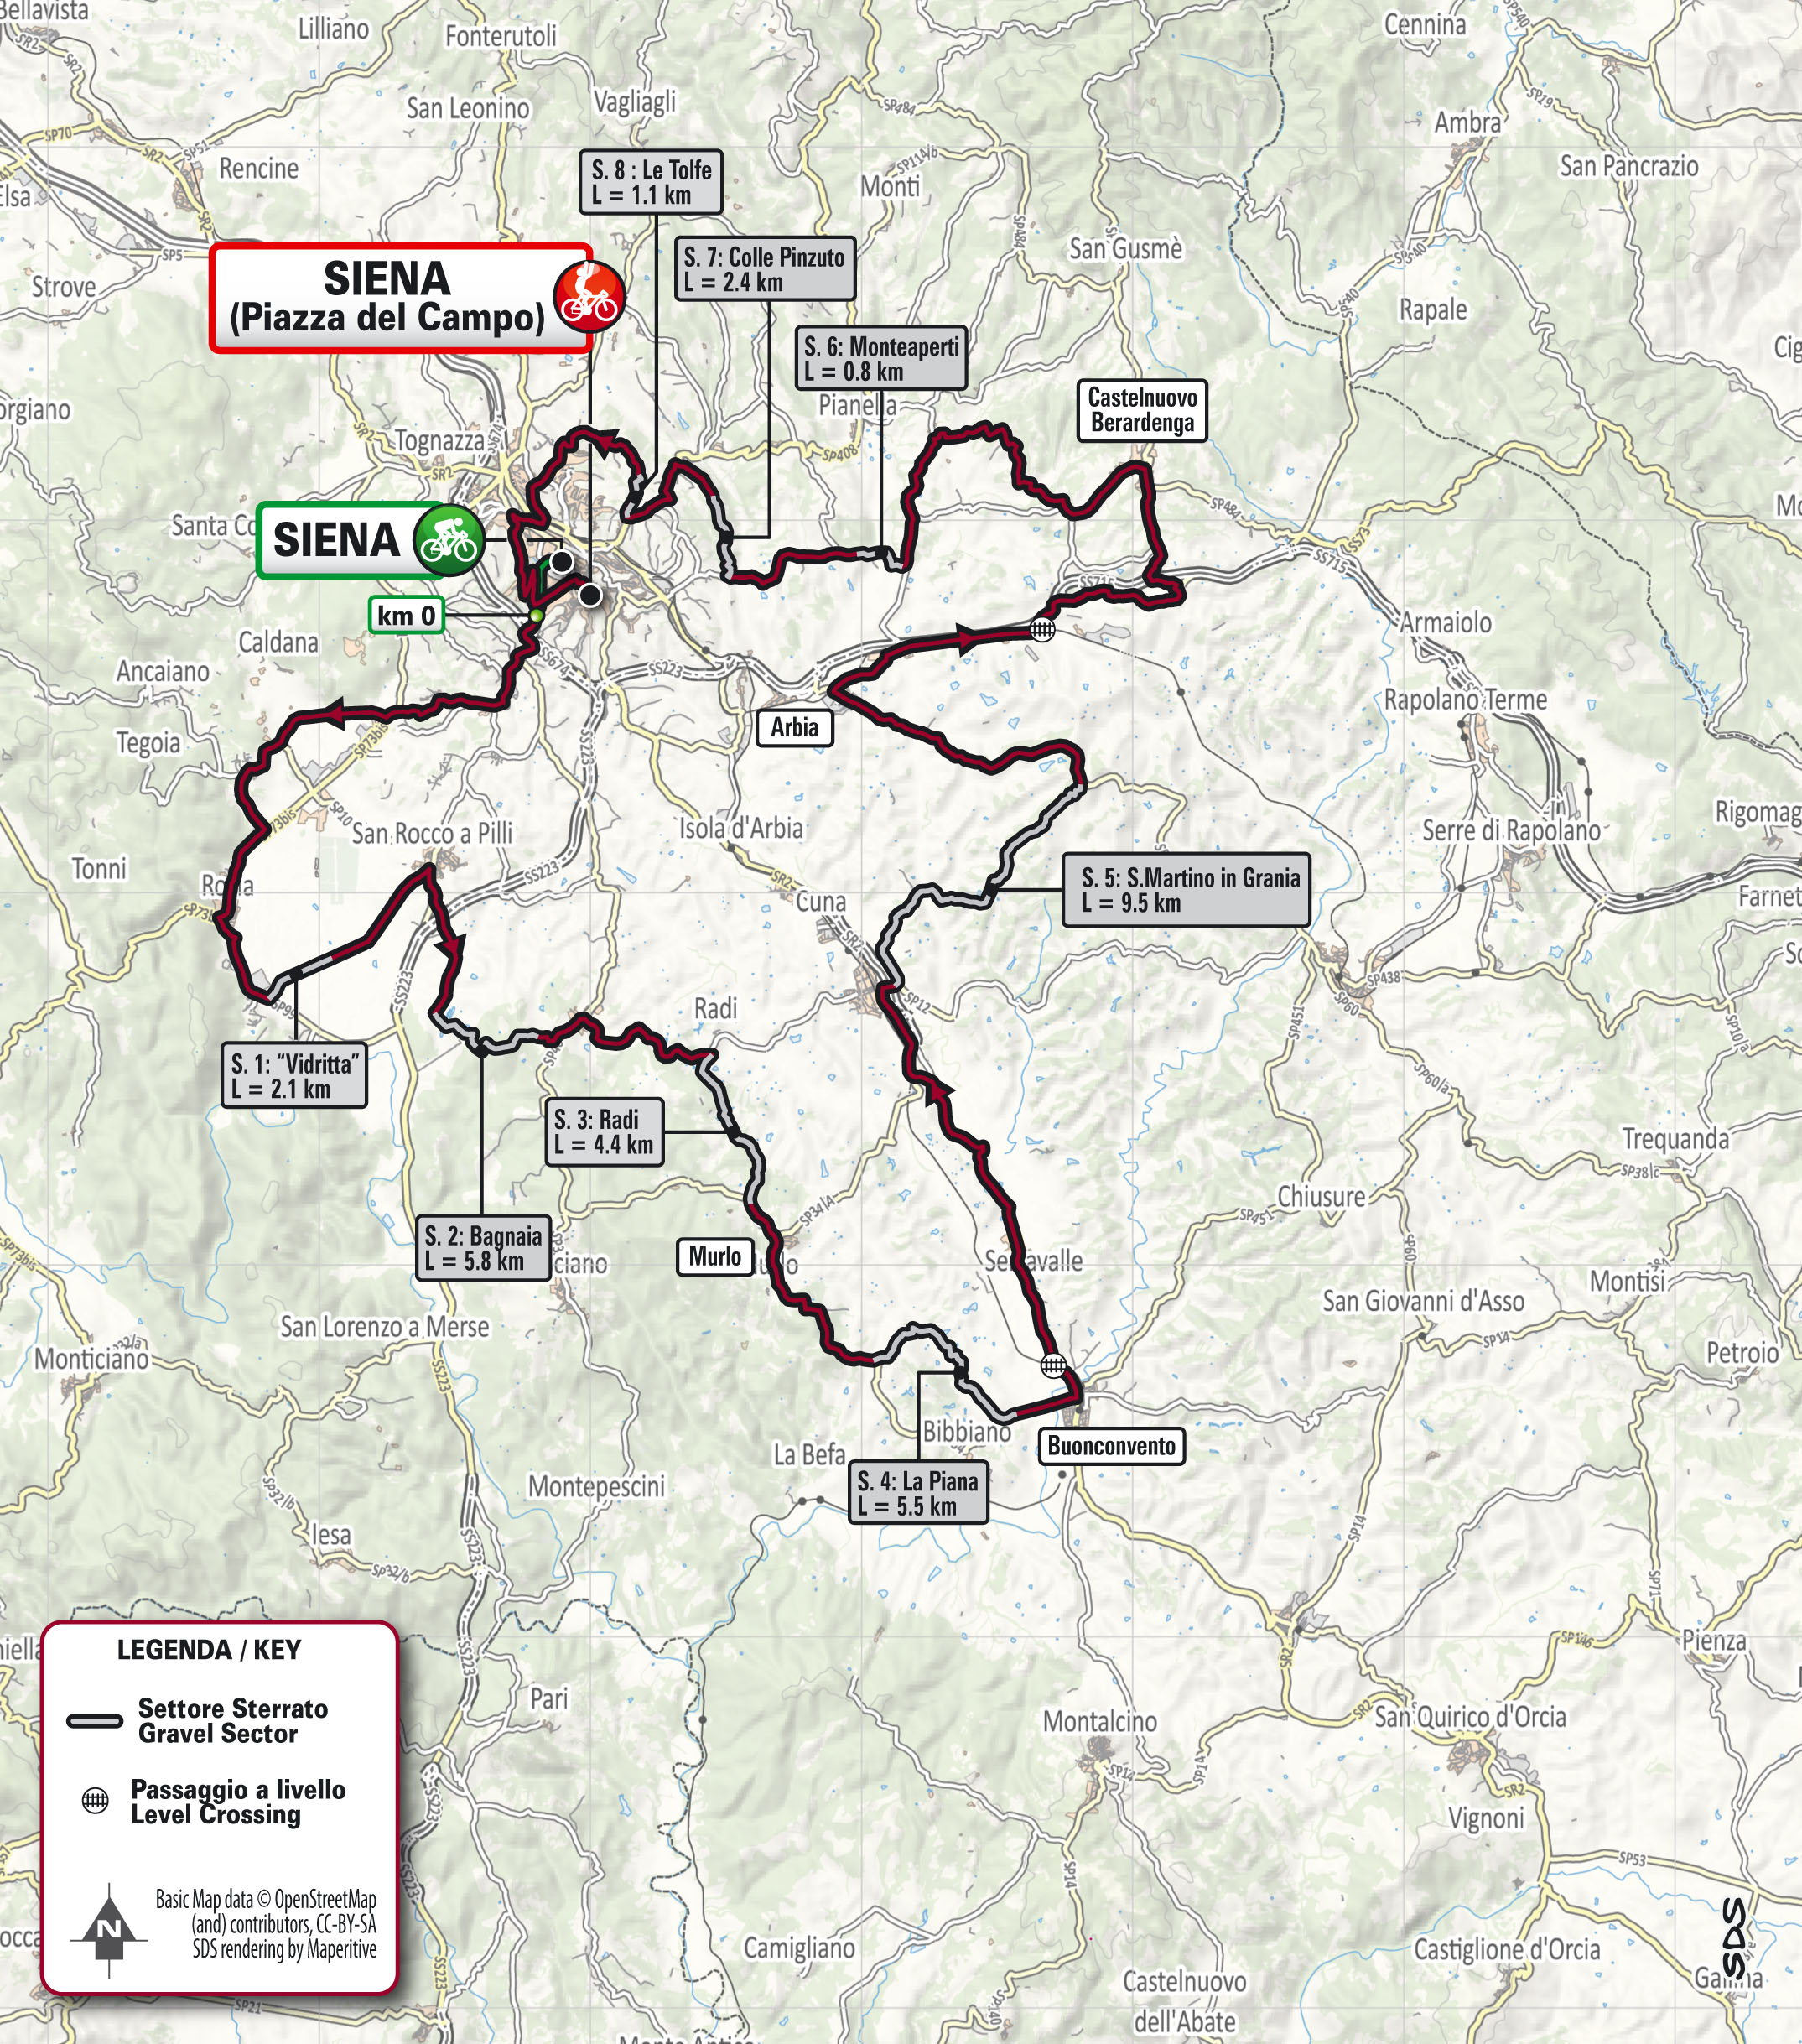 Mapa przeiegu trasy Strade Bianche 2022 kobiet